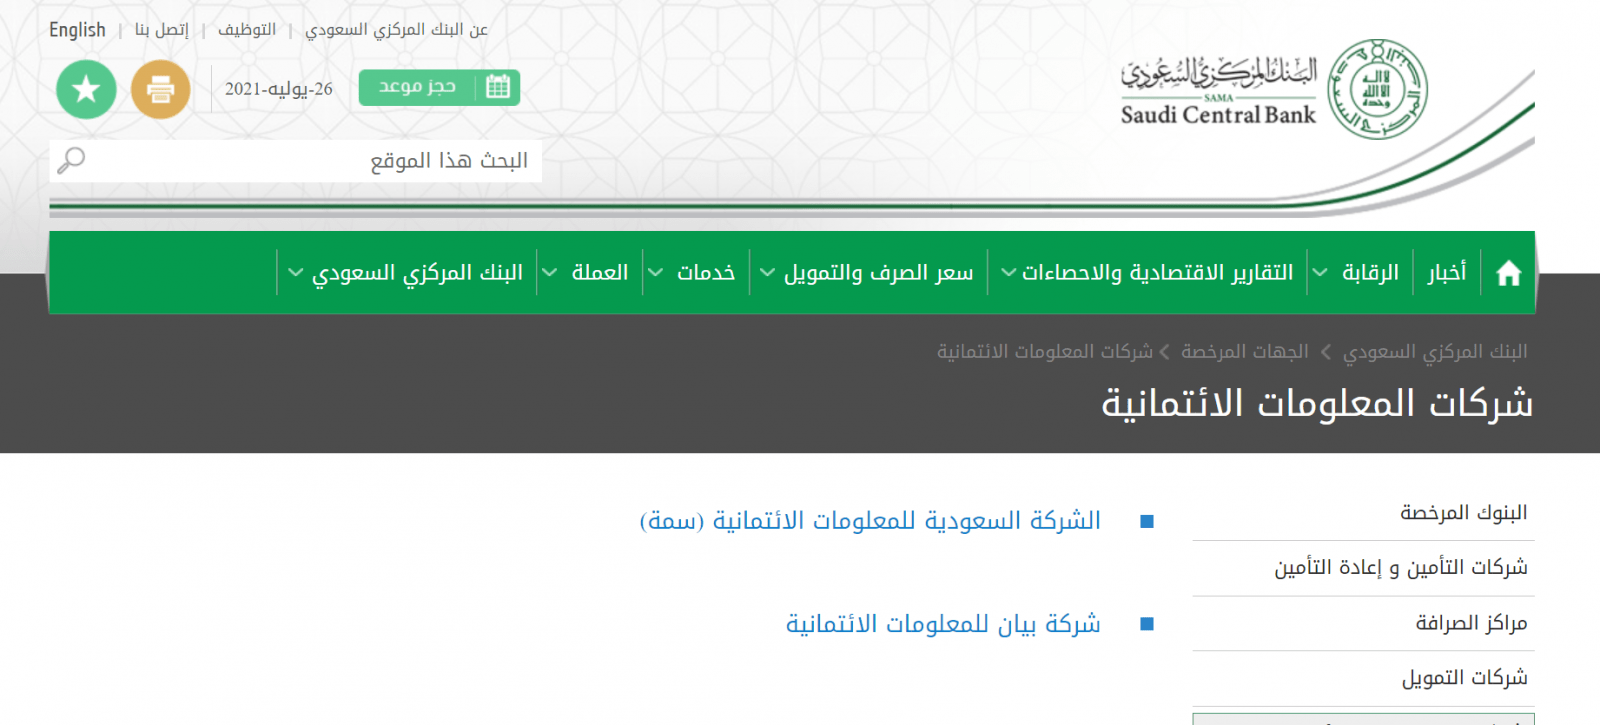 طريقة الاستعلام عن سمه برقم الهوية عبر موقع simah.com والرسائل النصية